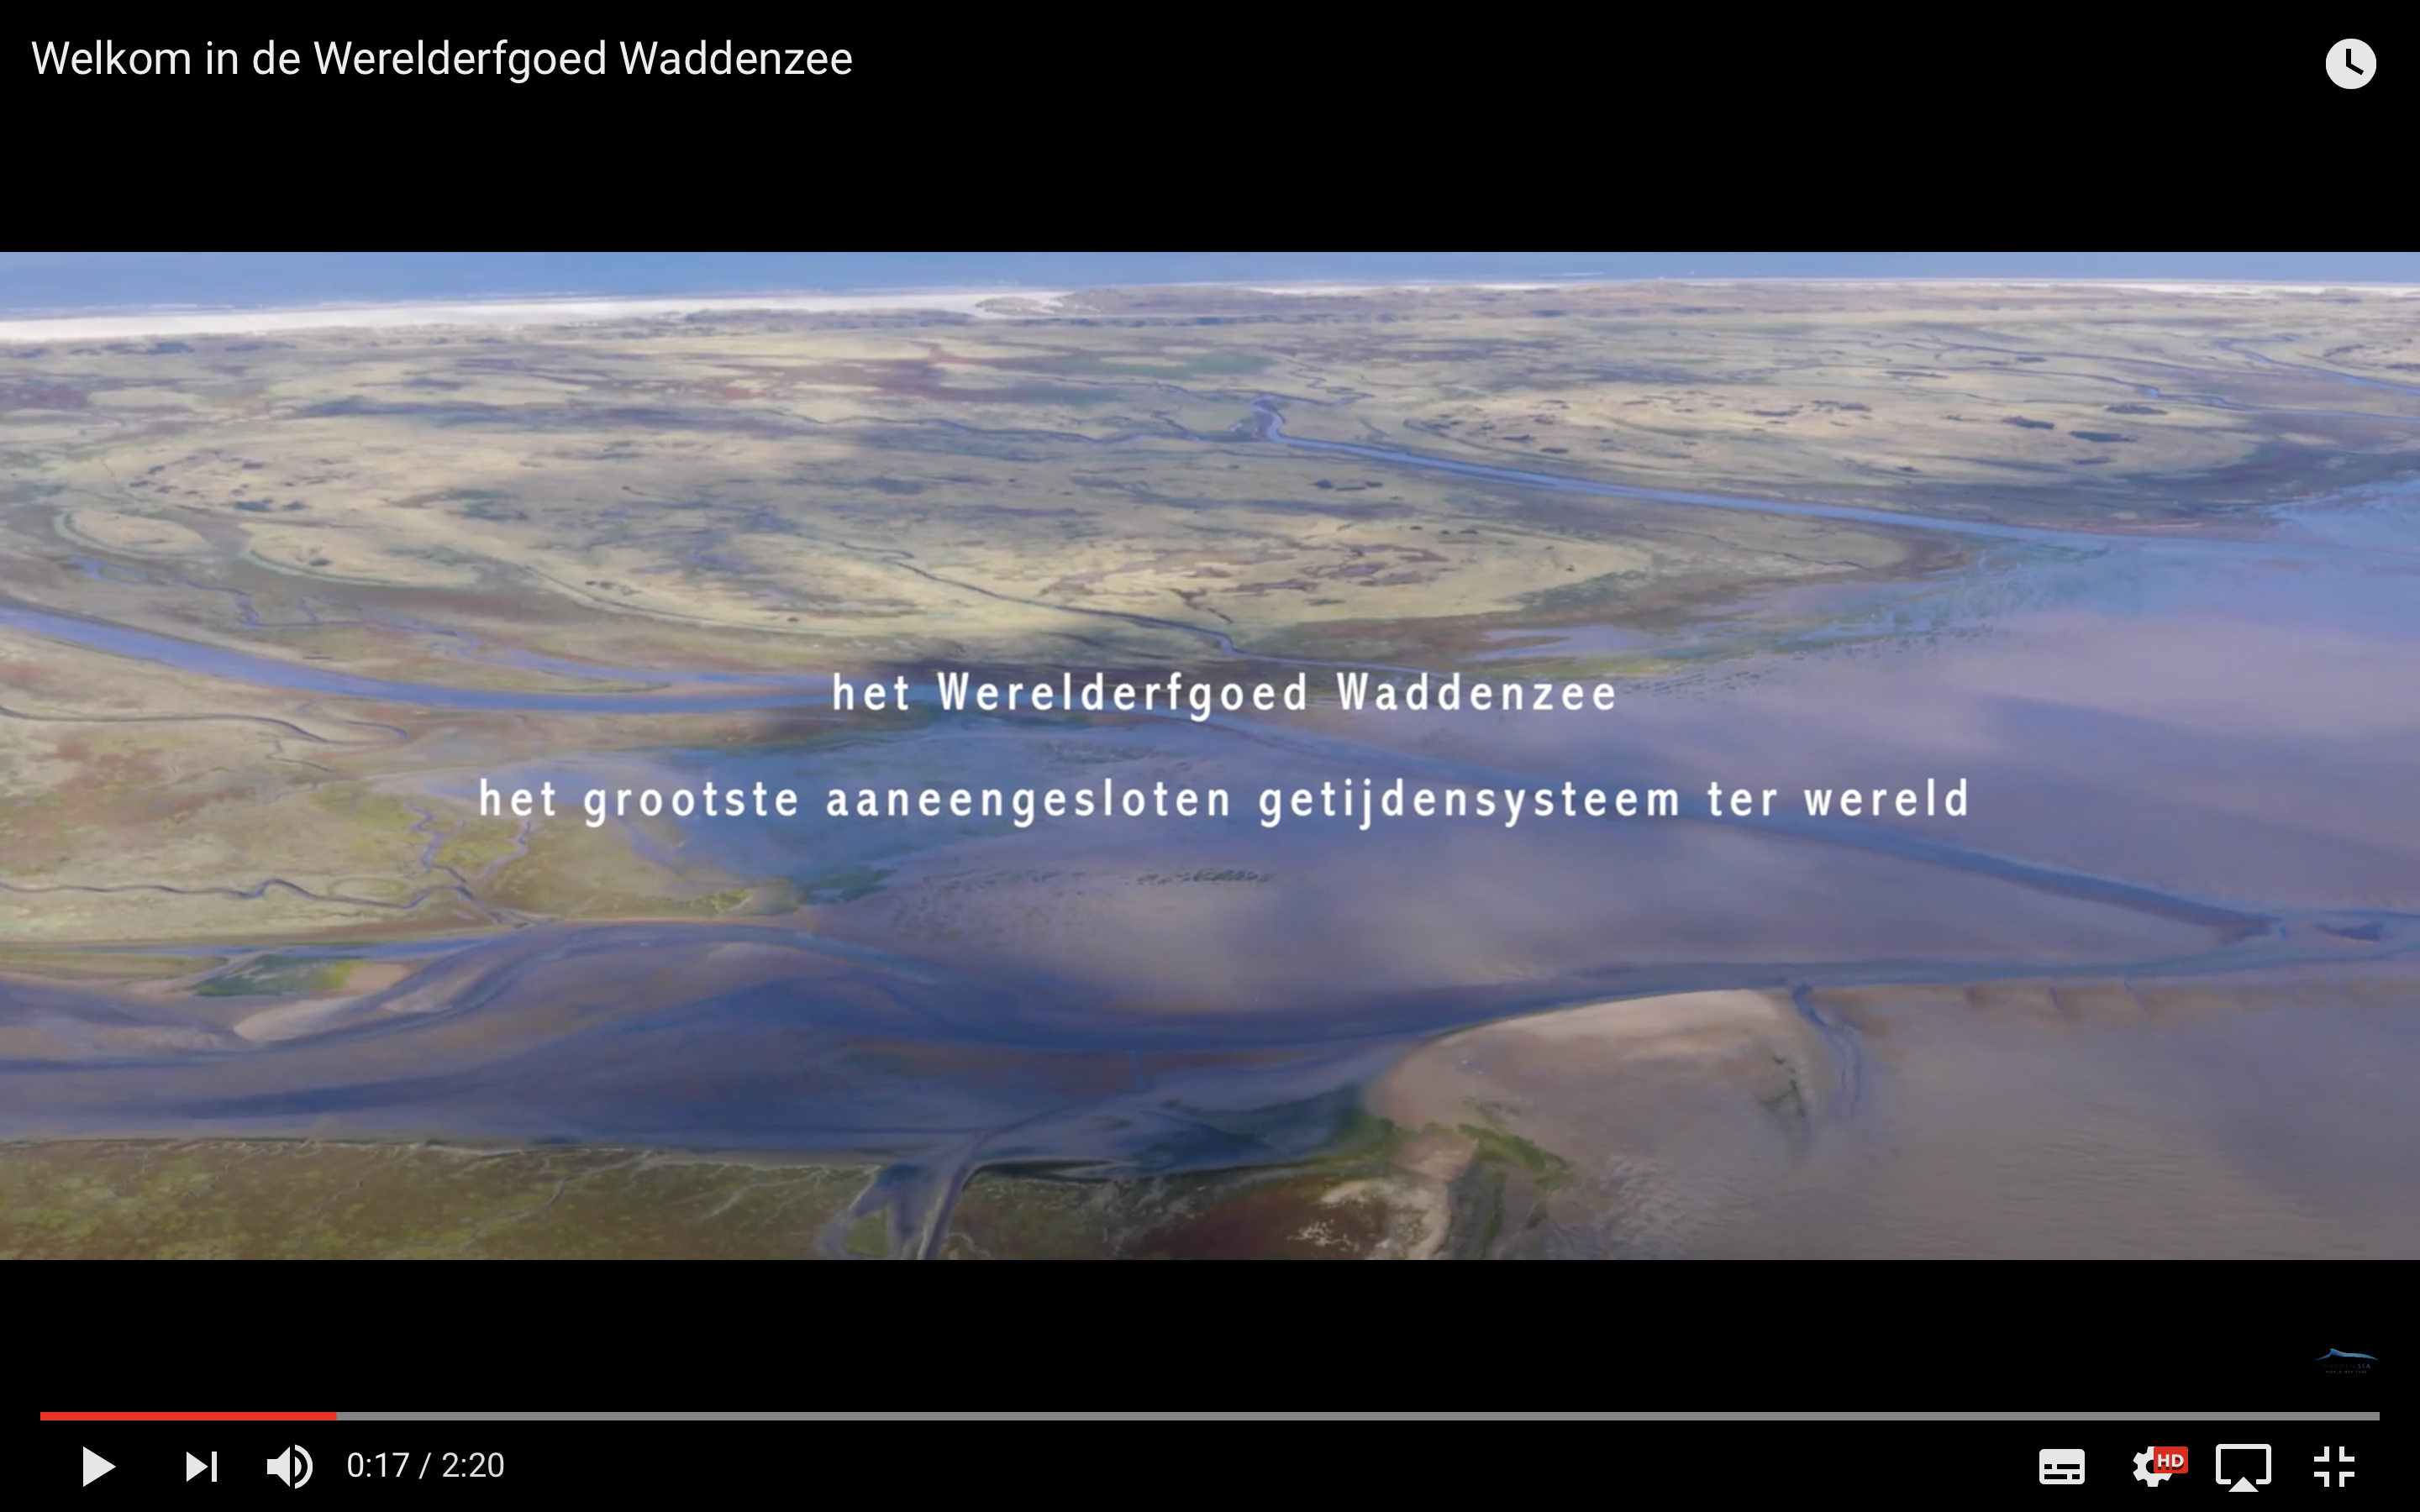 Screenshot Waddenzee Werelderfgoedvideo